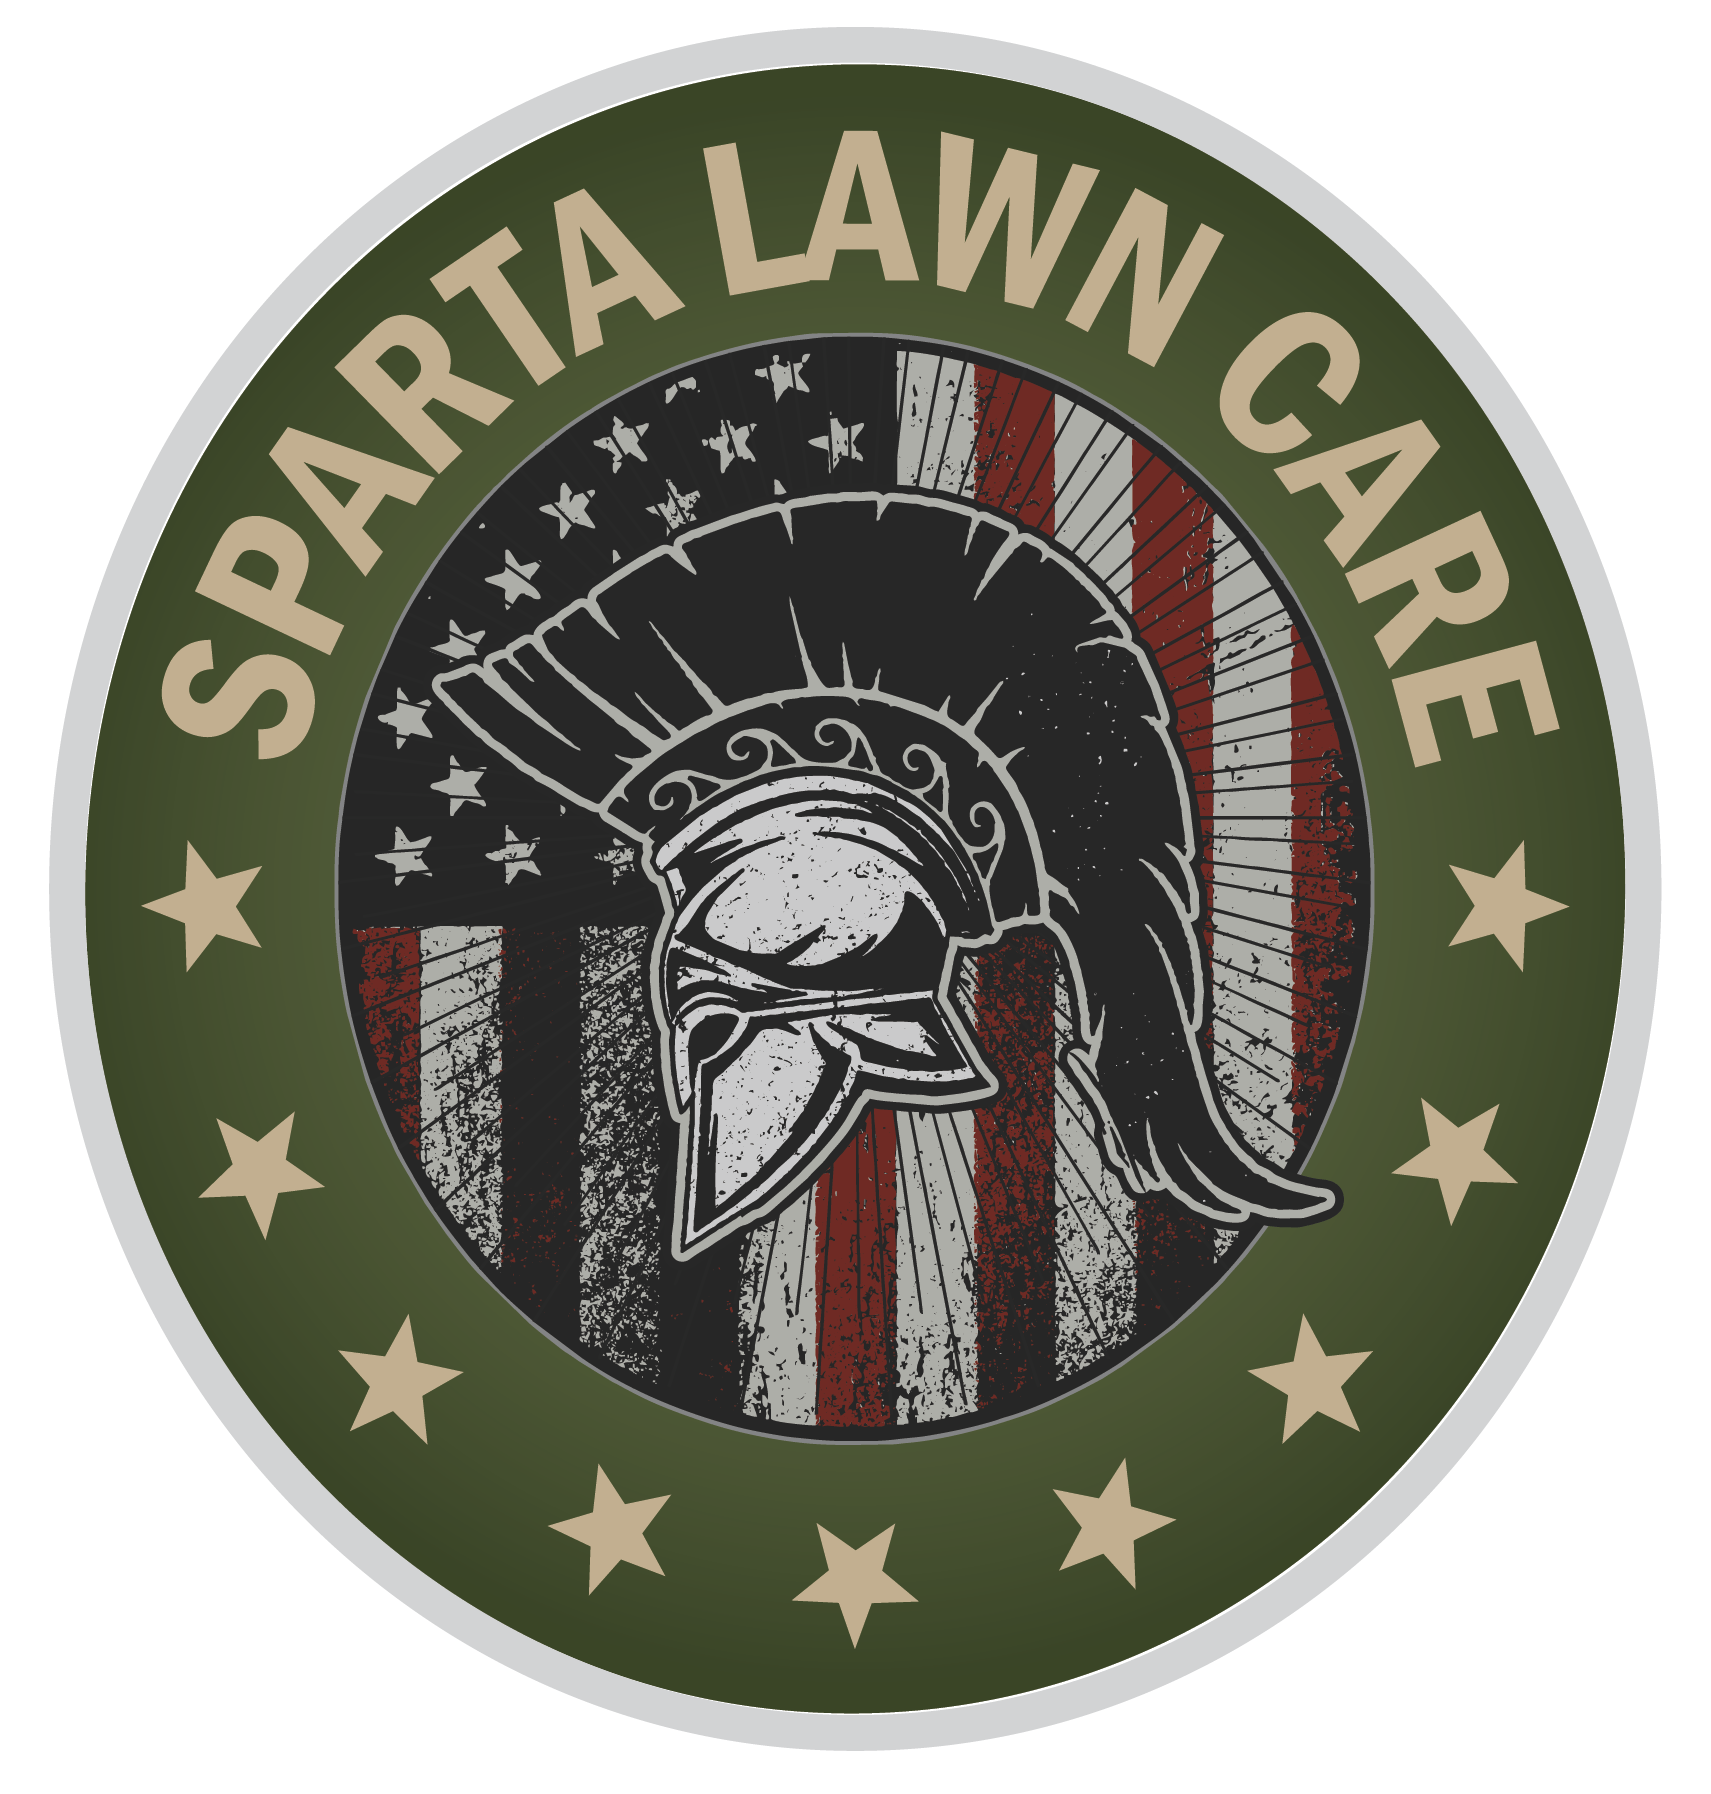 Sparta Lawn Care